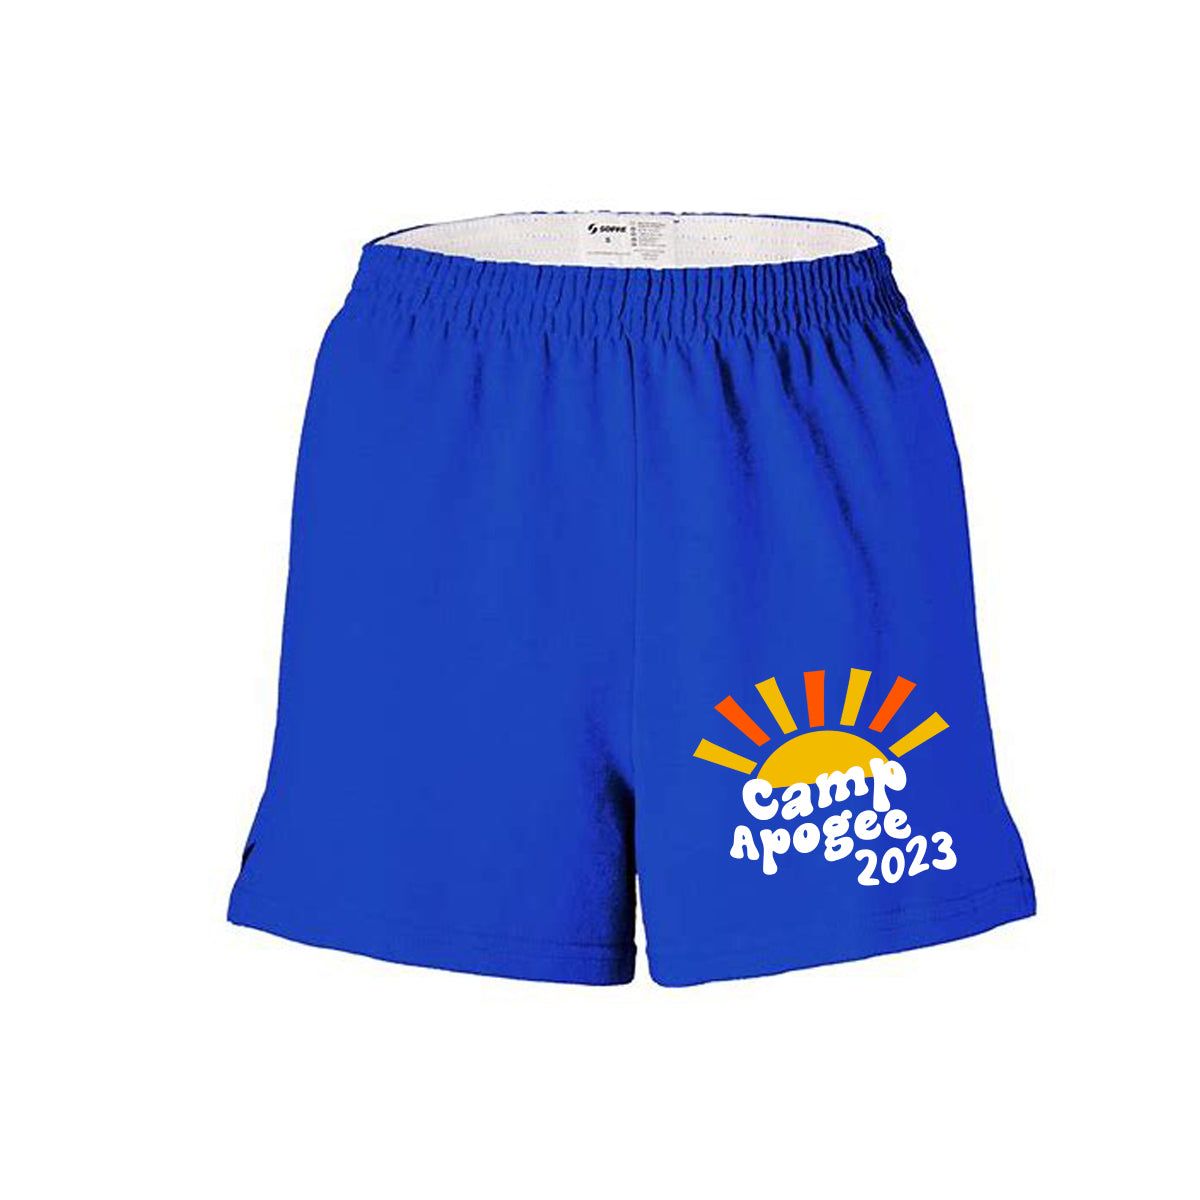 Hilltop Camp Design 2 Girls Shorts